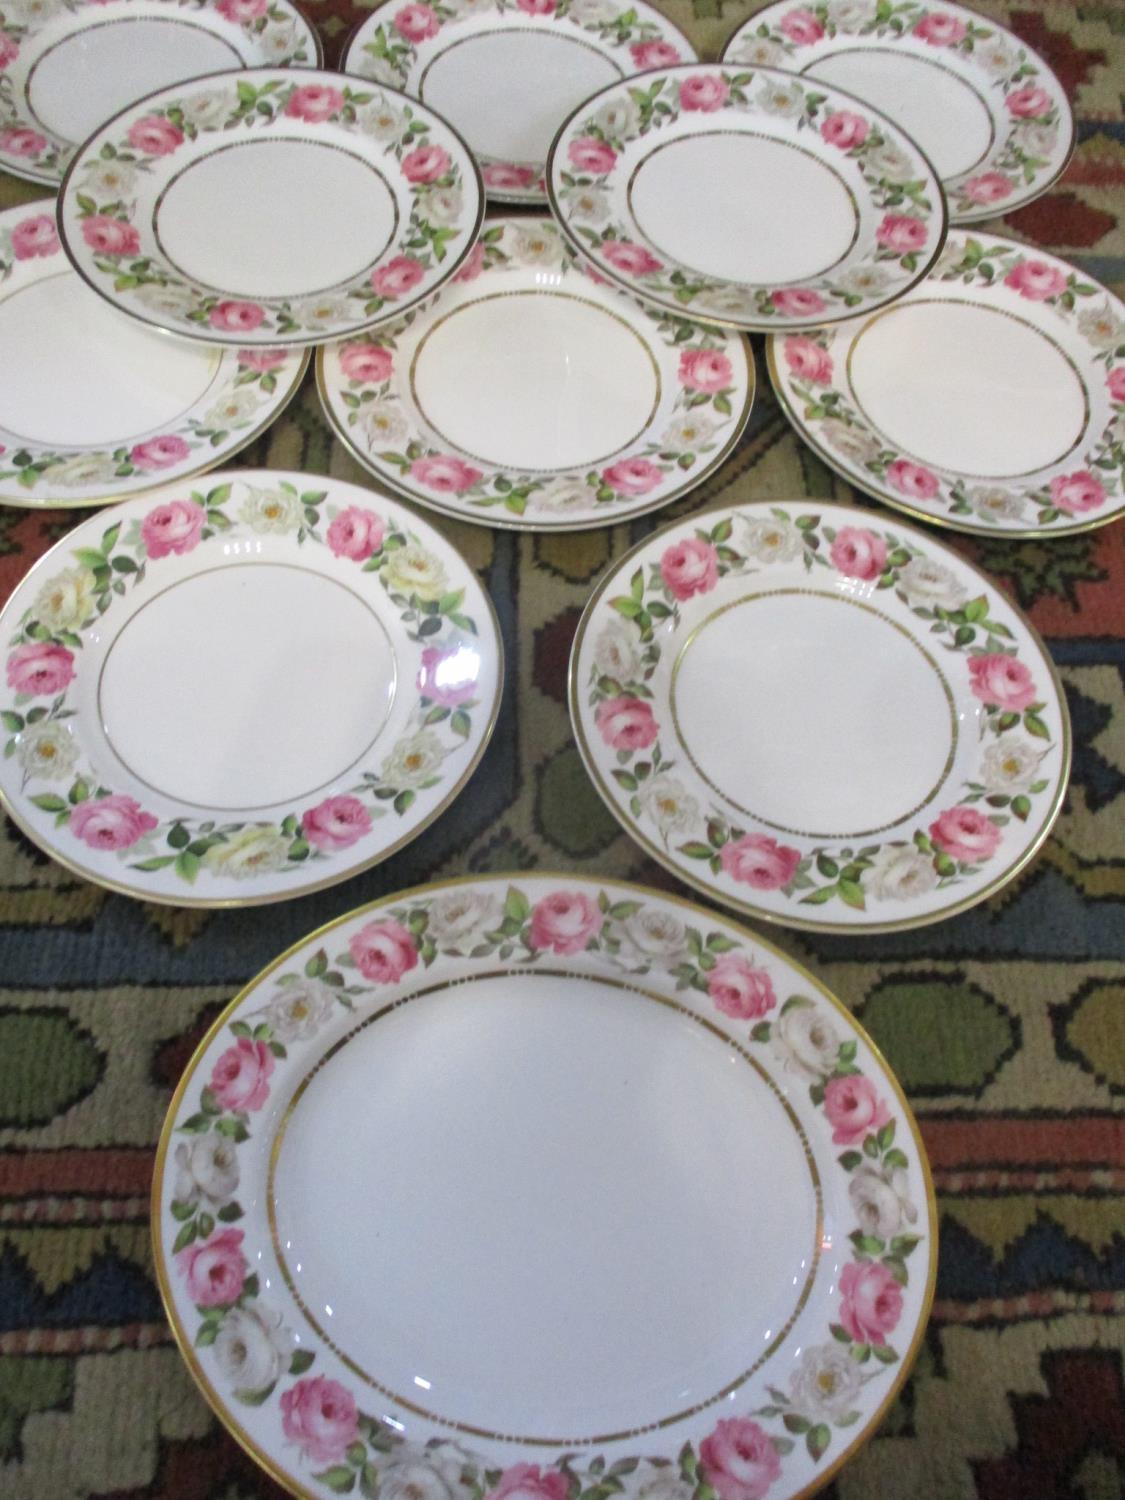 Ten Royal Worcester Royal Garden dinner plates and a matching serving platter